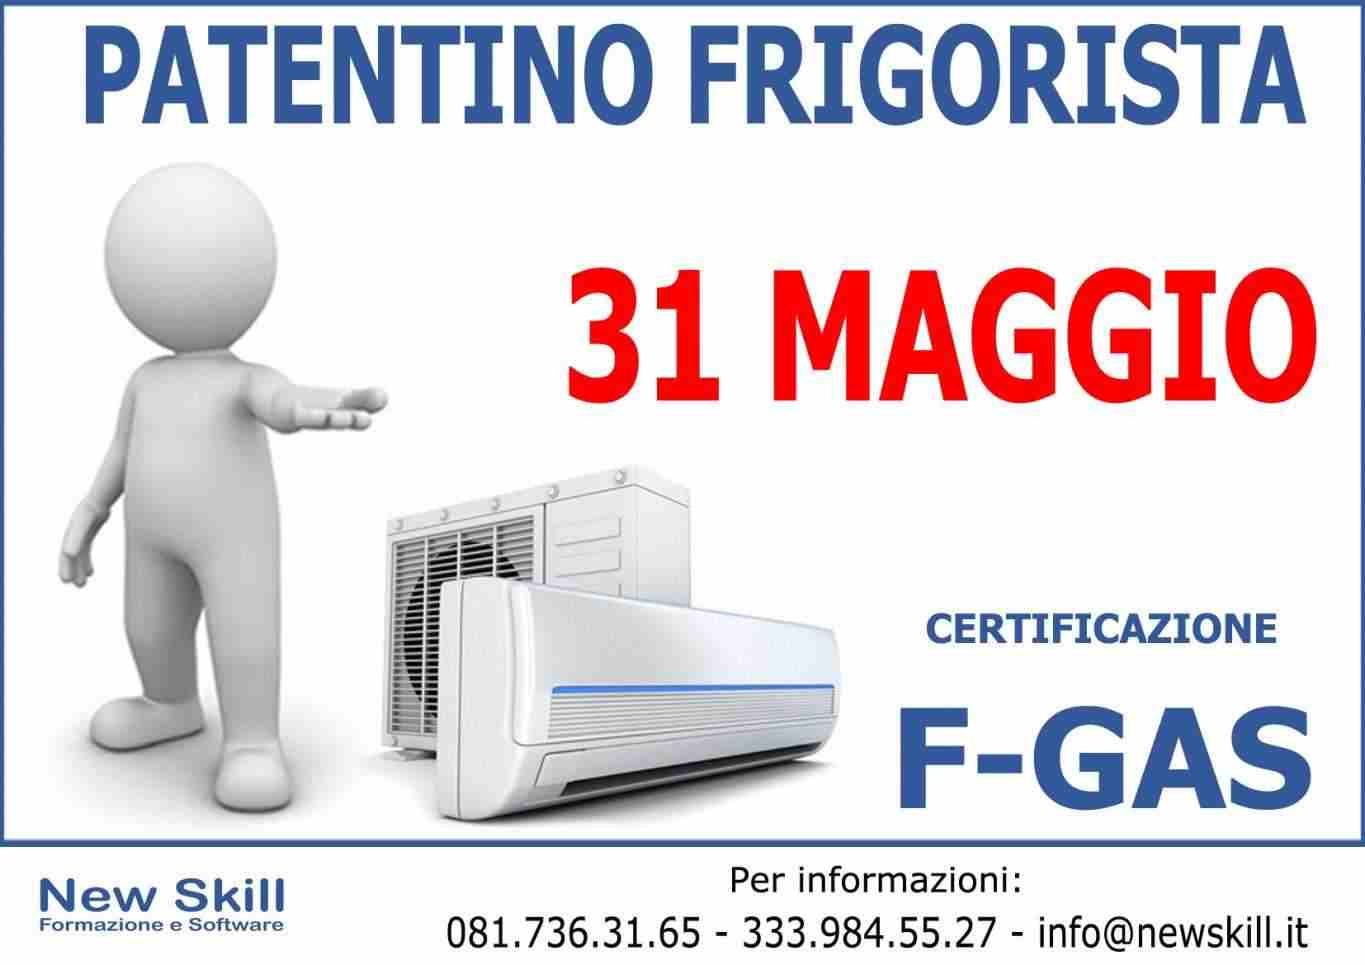 Patentino Frigorista - Certificazione F-GAS